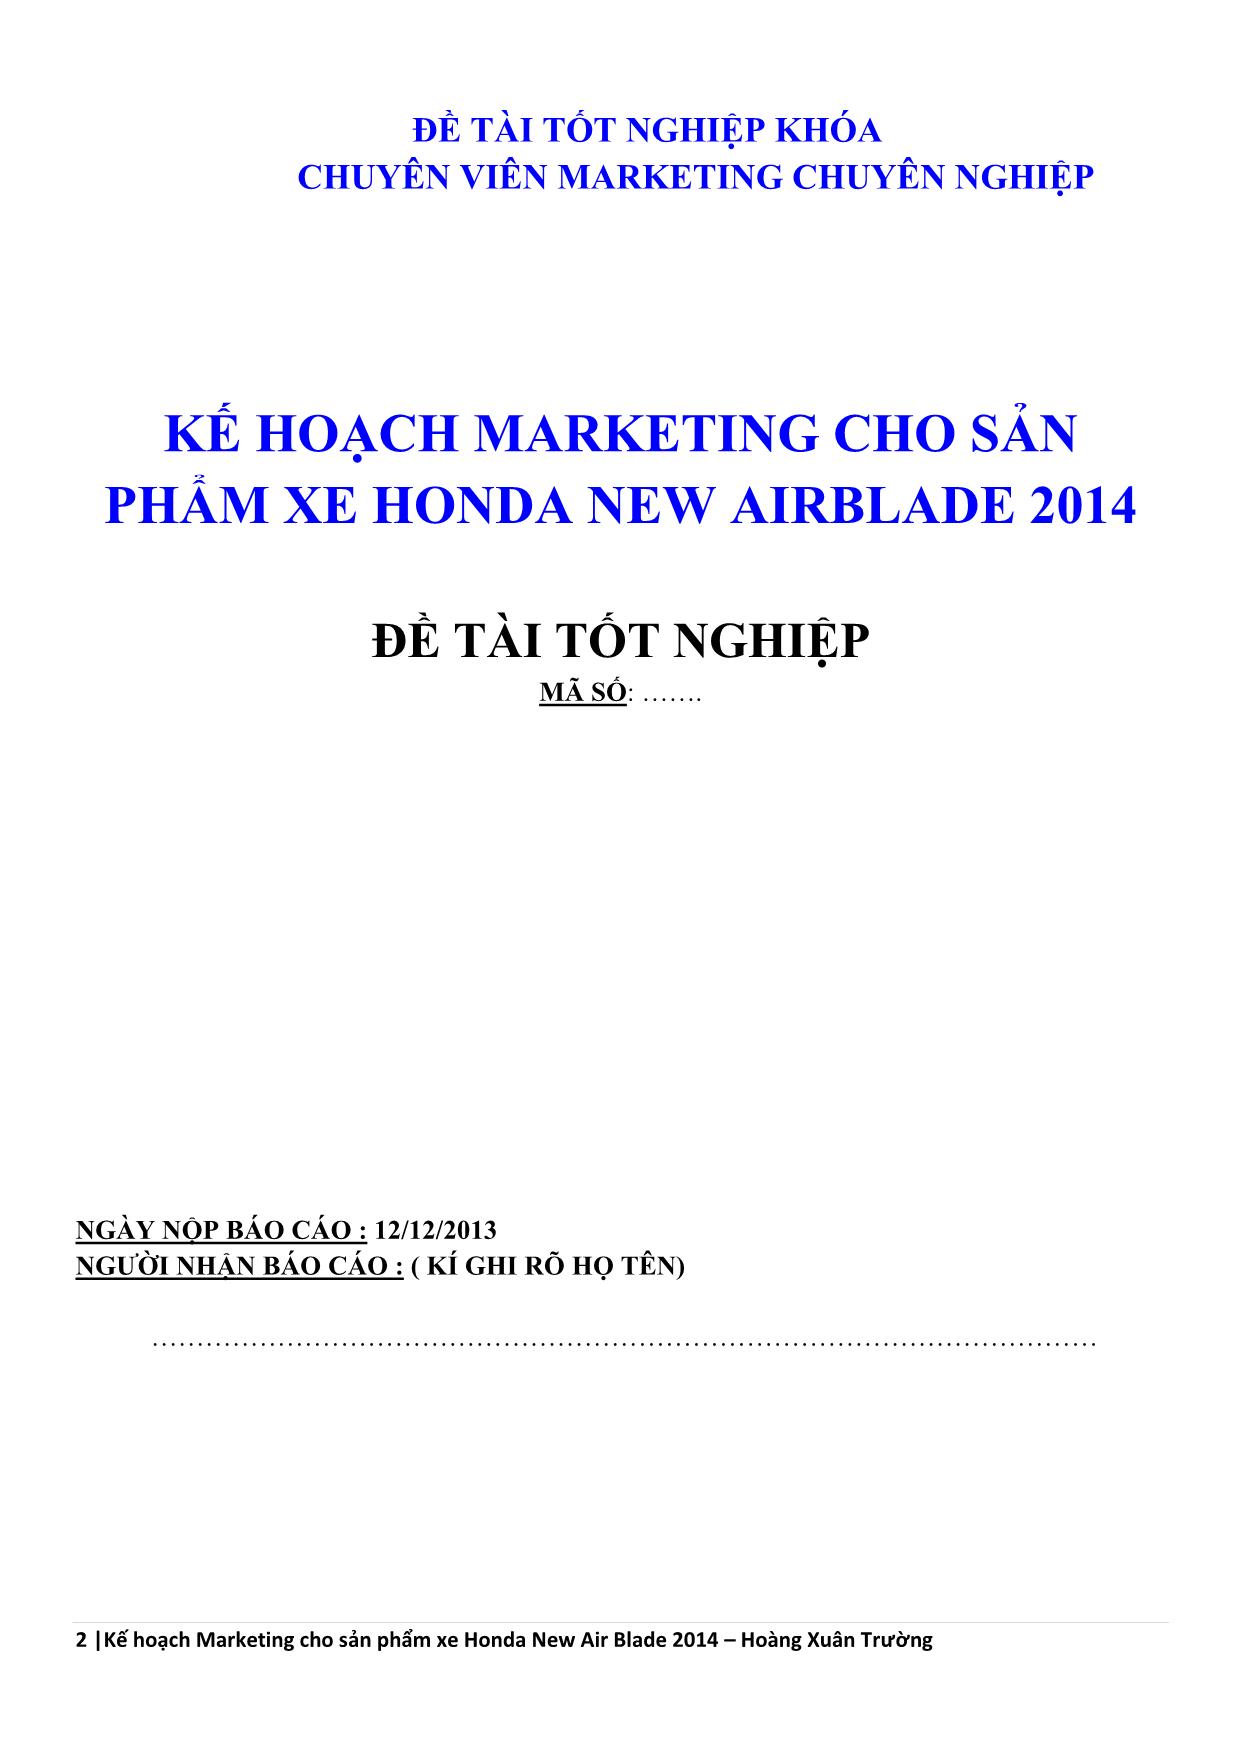 Đề tài Kế hoạch Marketing cho sản phẩm xe Honda New Air Blade 2014 trang 2